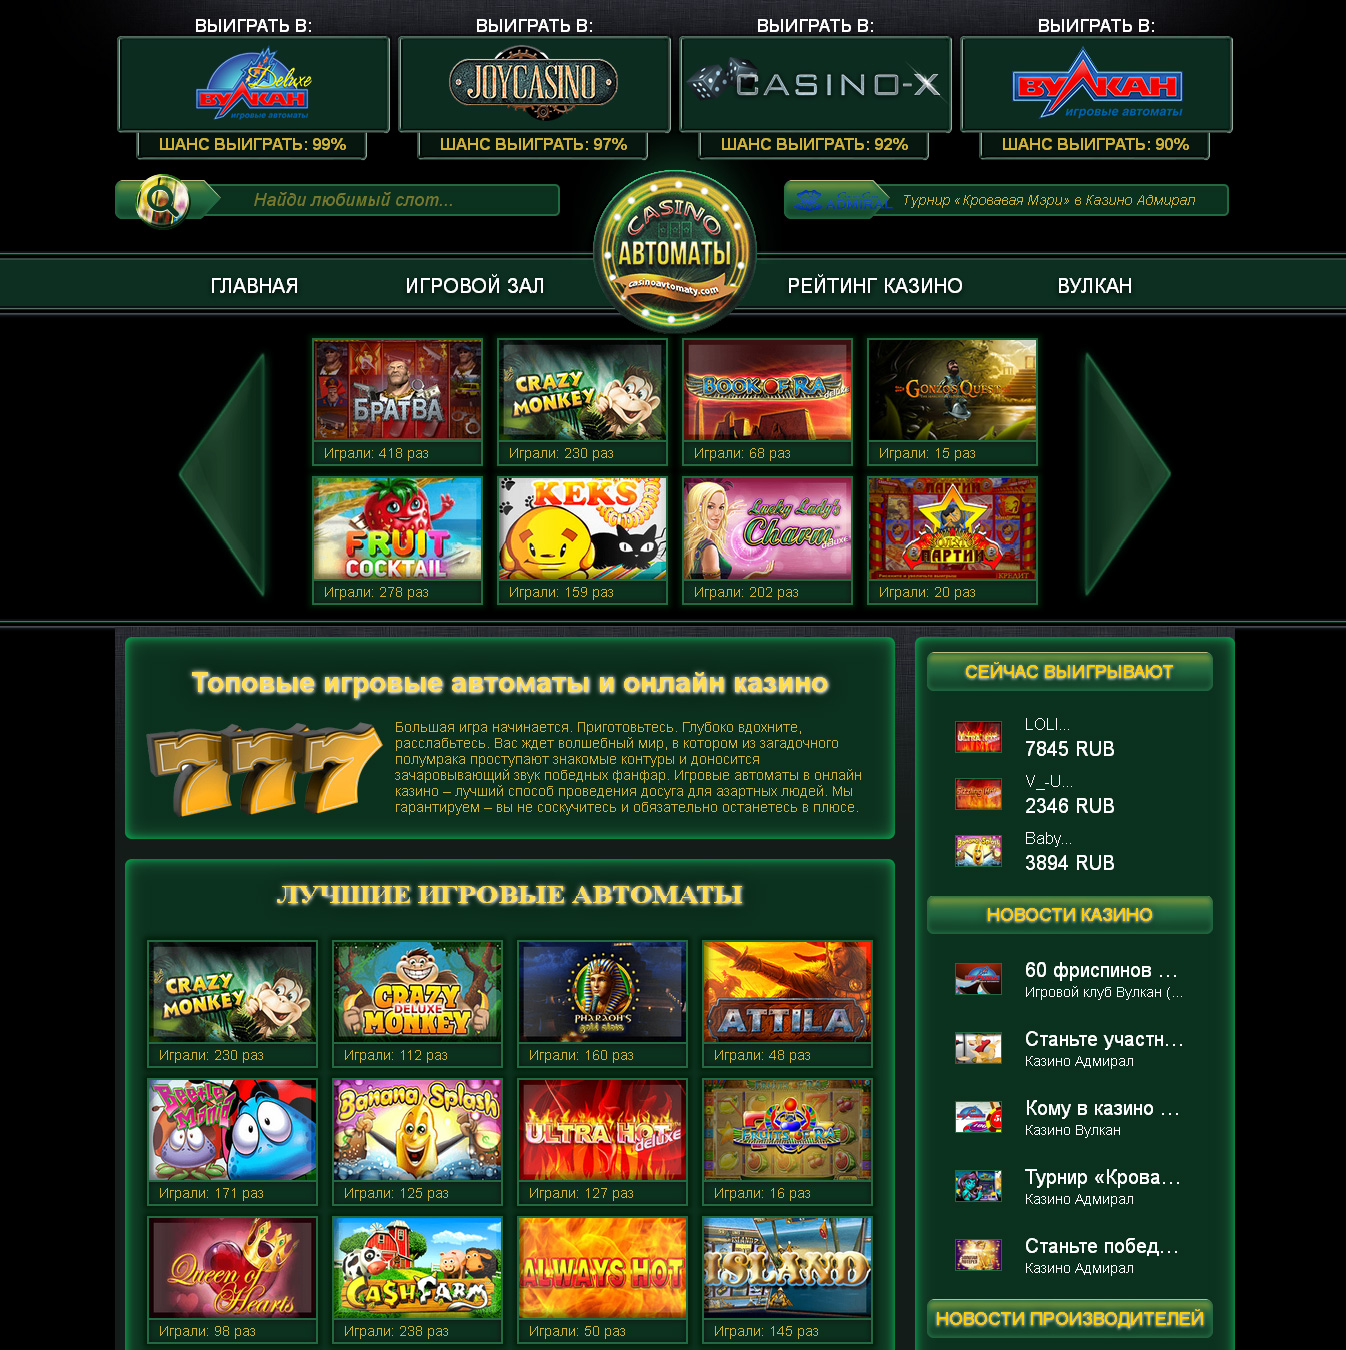 Casino online - игровые автоматы, рулетка,